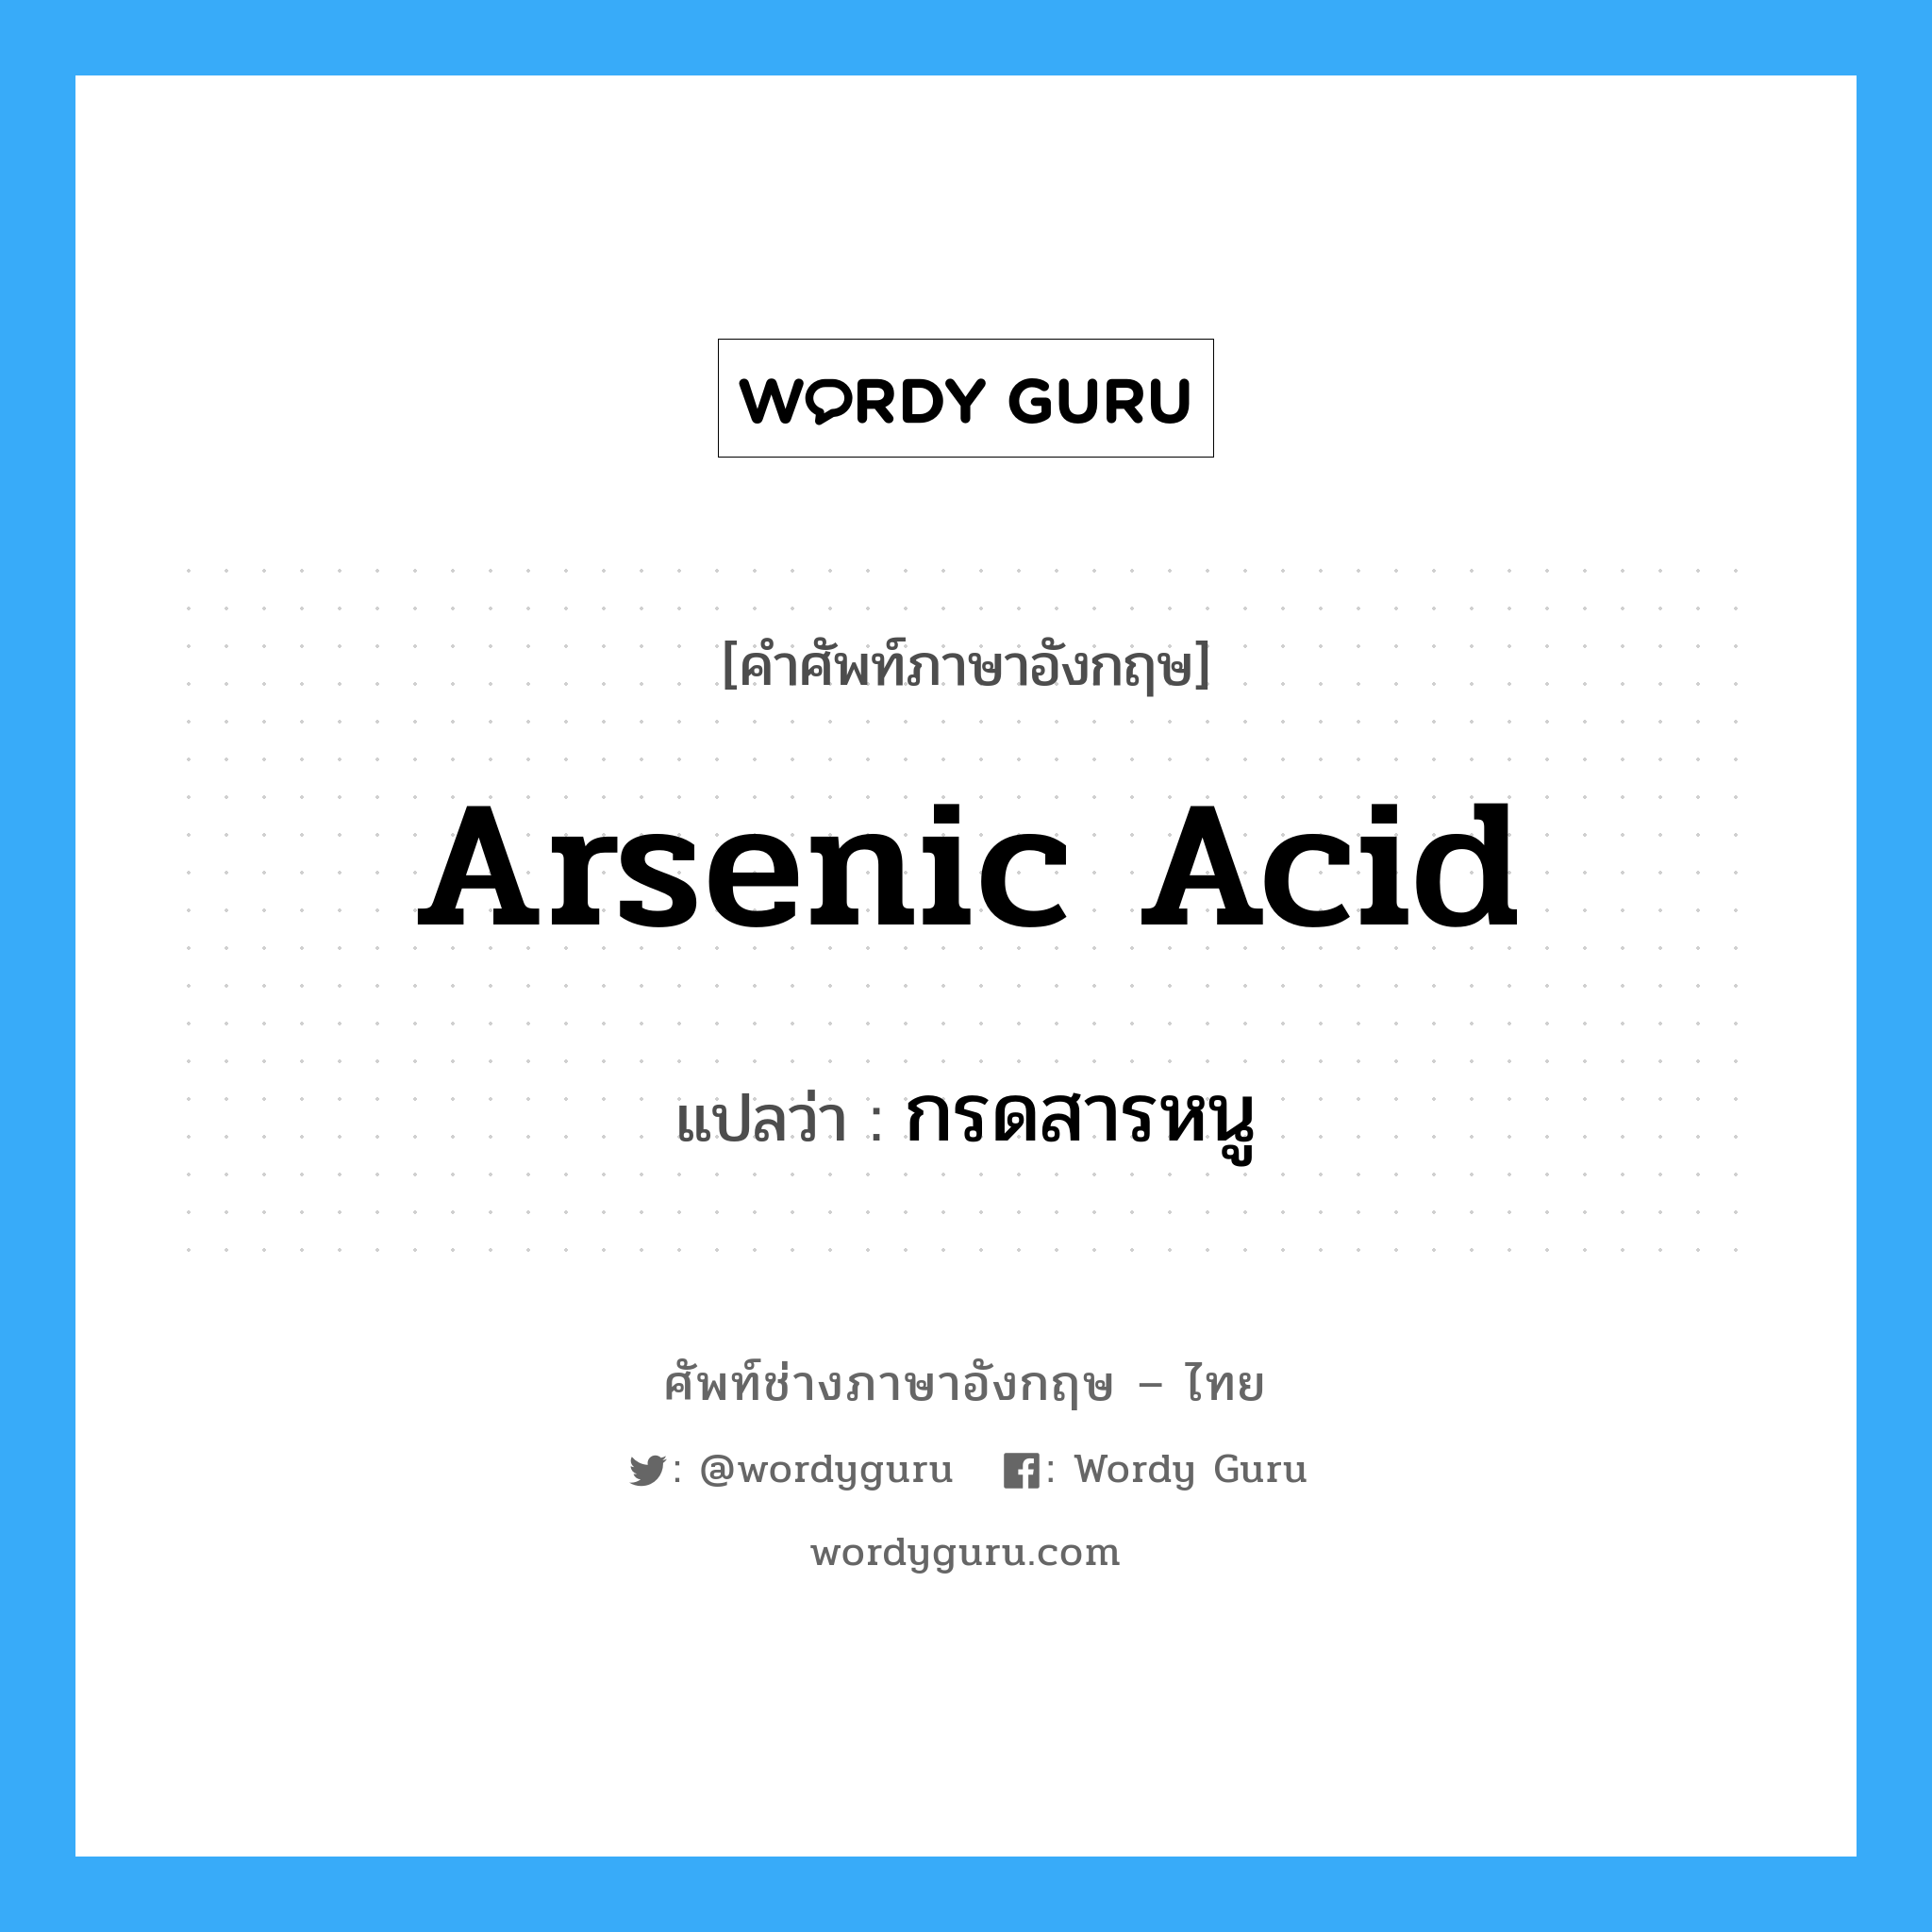 arsenic acid แปลว่า?, คำศัพท์ช่างภาษาอังกฤษ - ไทย arsenic acid คำศัพท์ภาษาอังกฤษ arsenic acid แปลว่า กรดสารหนู